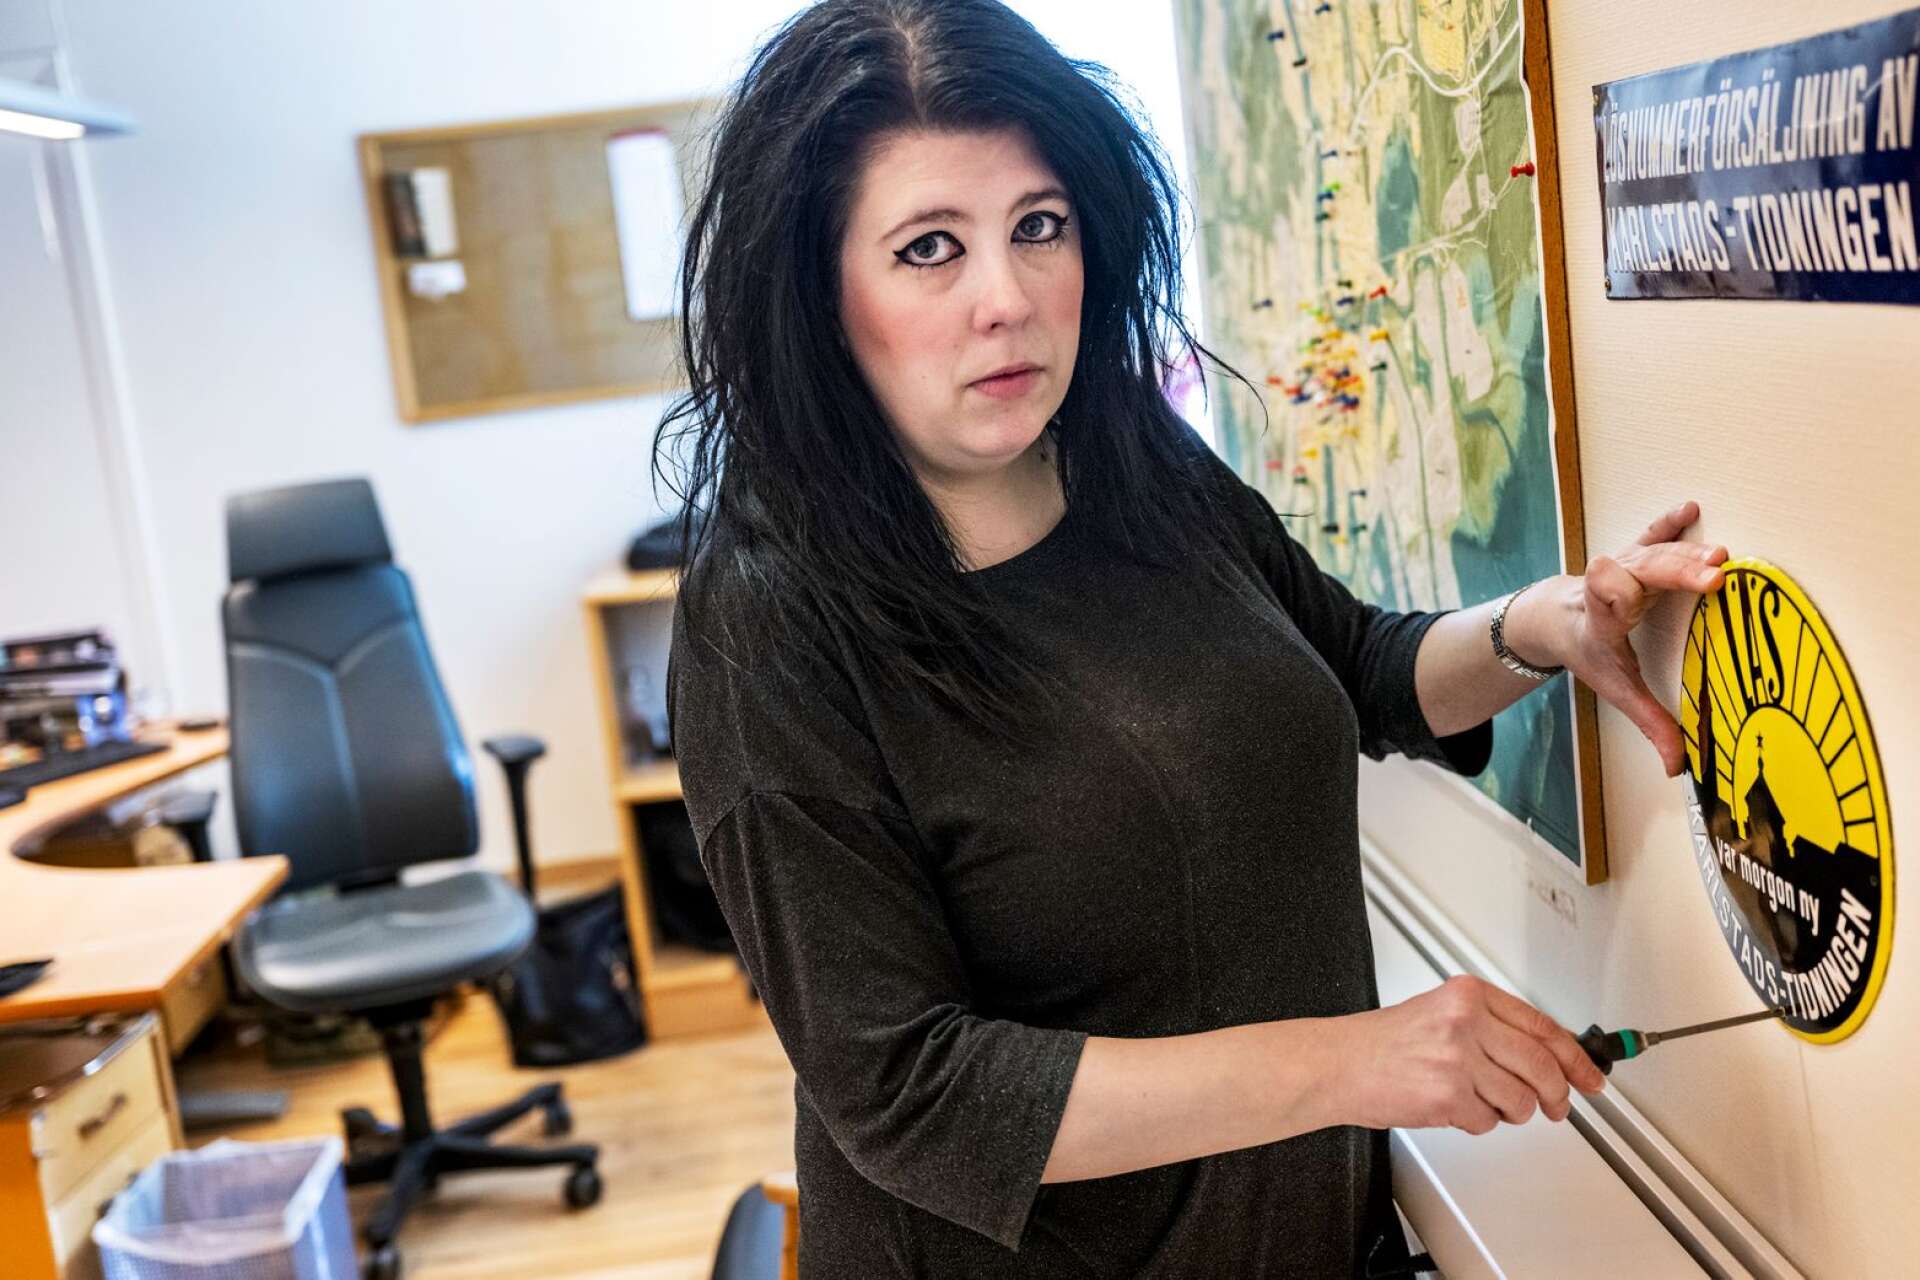 Karlstads-Tidningens chefredaktör Veronica Sjöblom tar ner skylten på kontoret. 